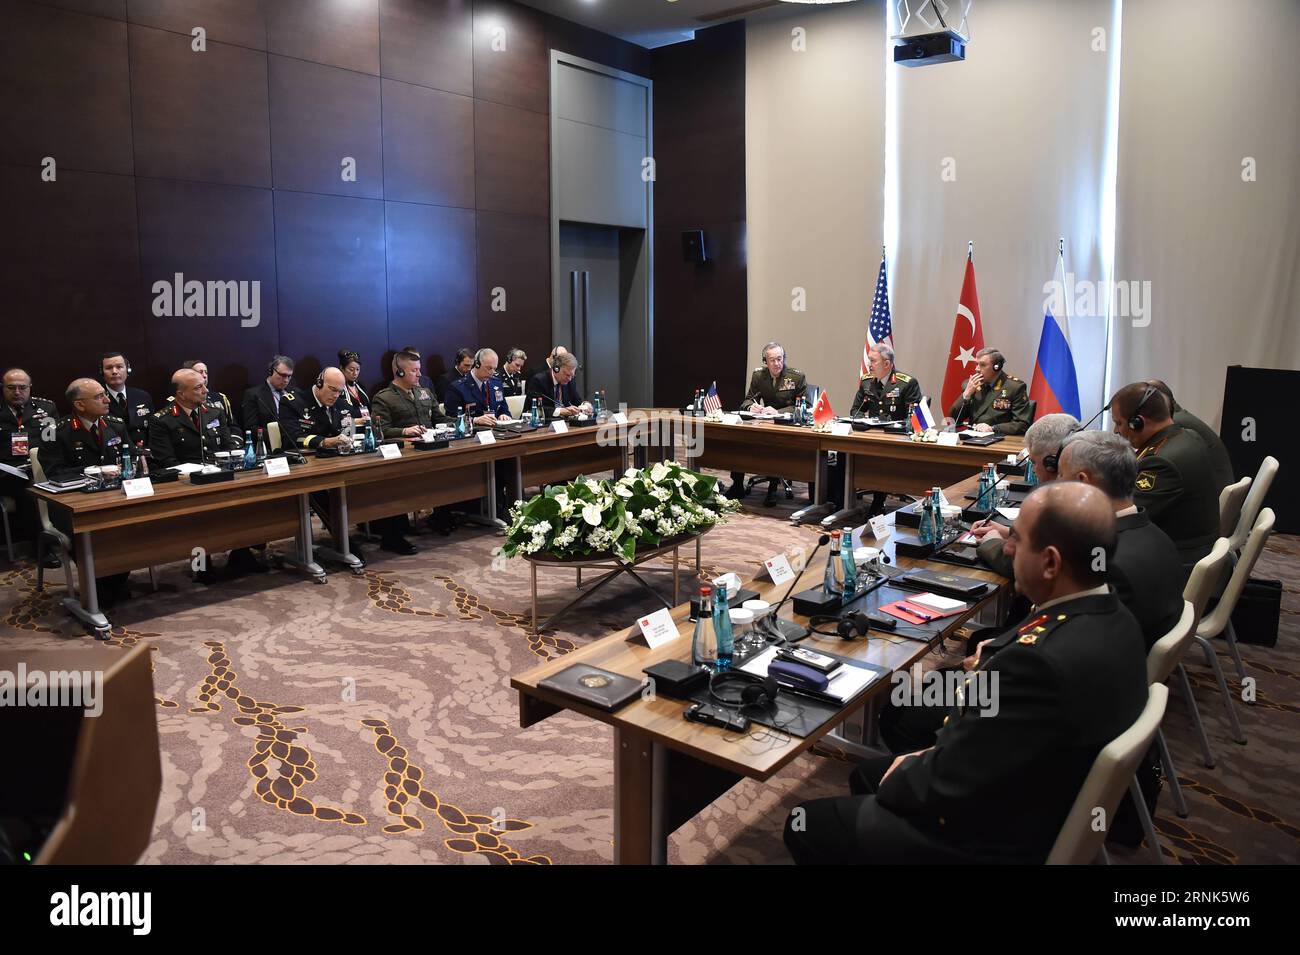 (170307) -- ANTALYA, 7. März 2017 () -- türkischer Generalstabschef General Hulusi Akar (hinten, C), US-Generalstabschef General Joseph Dunford (hinten, L) und russischer Generalstabschef General Valery Gerasimov (hinten, R) Gespräche über regionale Sicherheitsfragen mit Syrien und dem Irak stehen ganz oben auf der Tagesordnung, am 7. März 2017 in Antalya, Türkei. (/Türkische Streitkräfte) (zjy) TÜRKEI-ANTALYA-RUSSLAND-USA-SYRIEN UND IRAK GESPRÄCHE Xinhua PUBLICATIONxNOTxINxCHN Antalya 7. März 2017 türkischer Generalstabschef General Hulusi Akar Rear C US Generalstabschef General General General Joseph Dunford Rear l und russischer Chef o Stockfoto